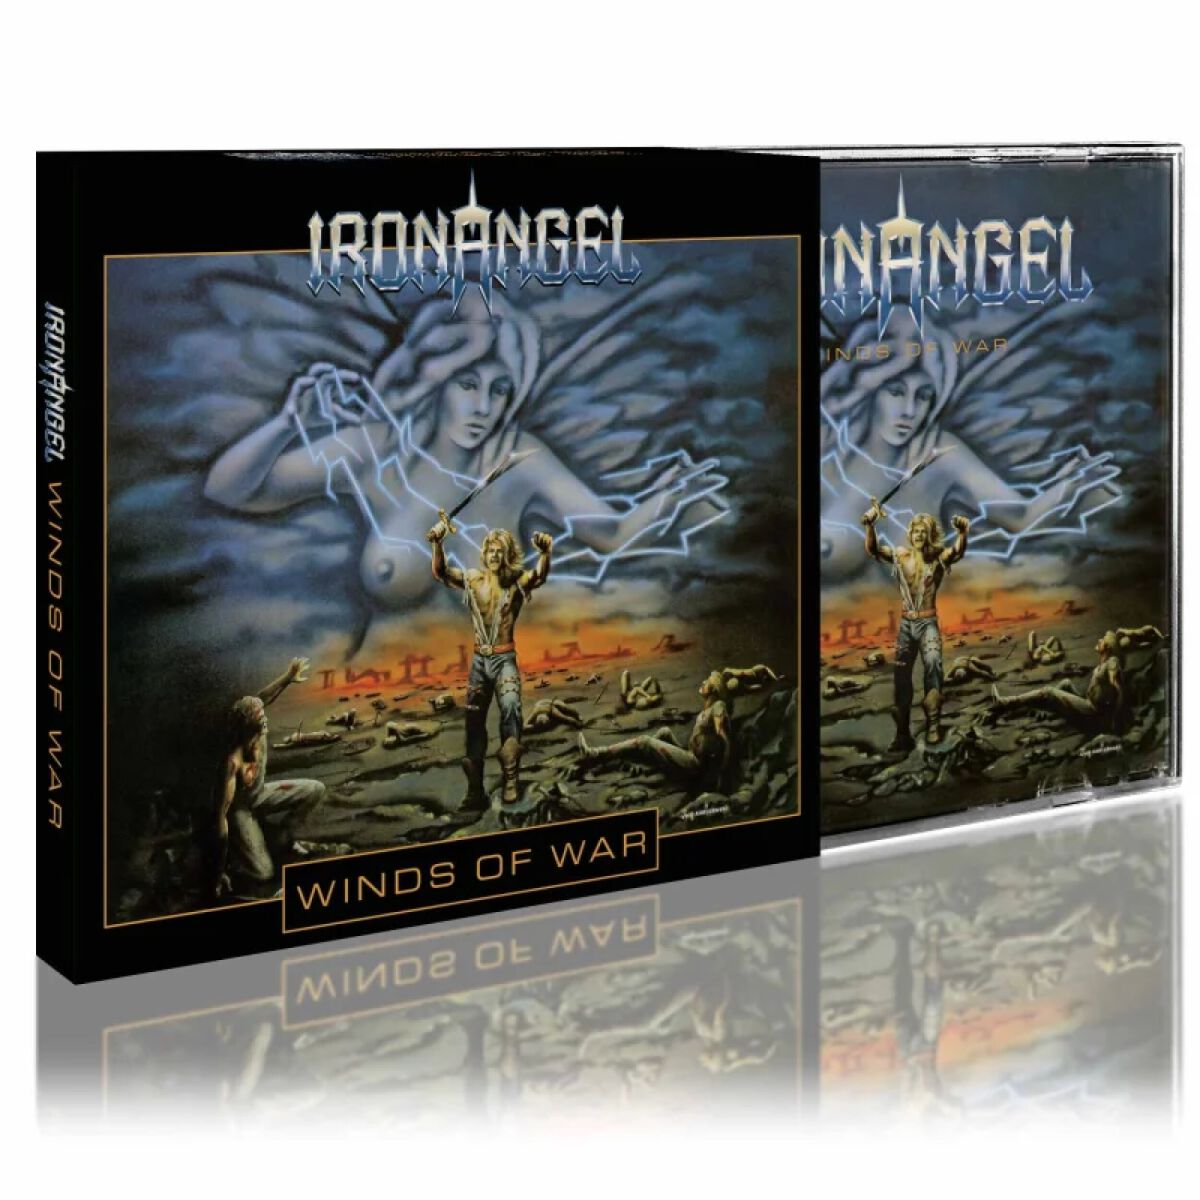 Winds of war von Iron Angel - CD (Slipcase)